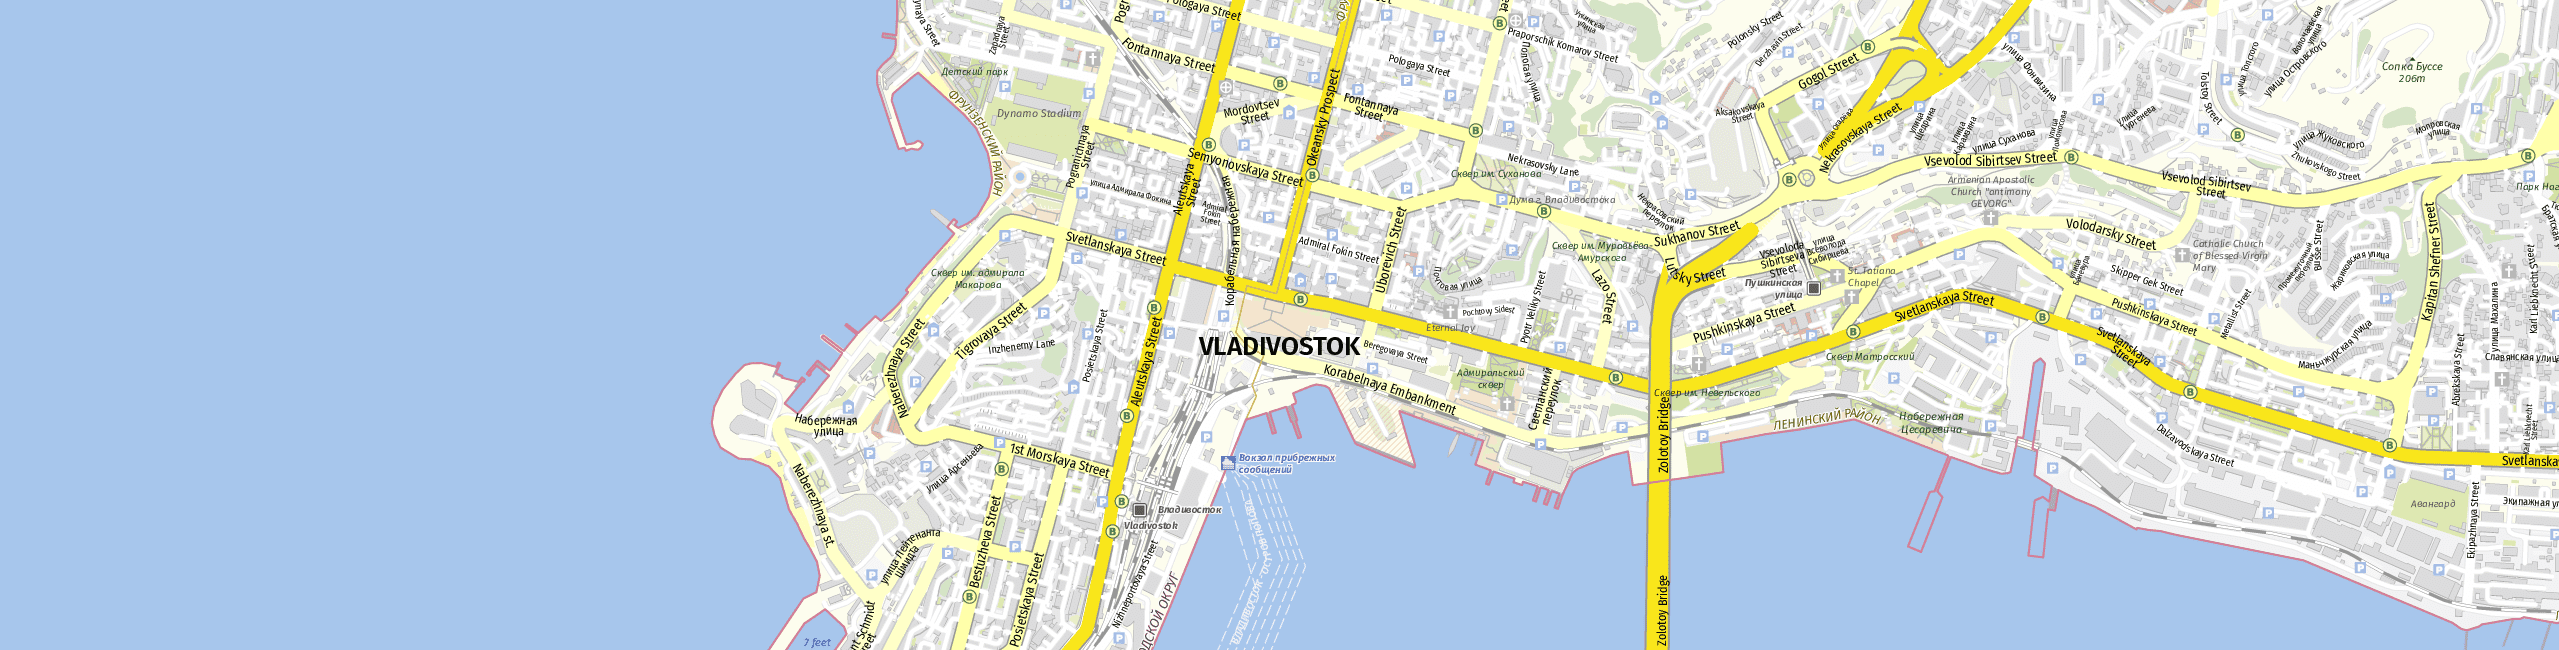 Stadtplan Vladivostok zum Downloaden.